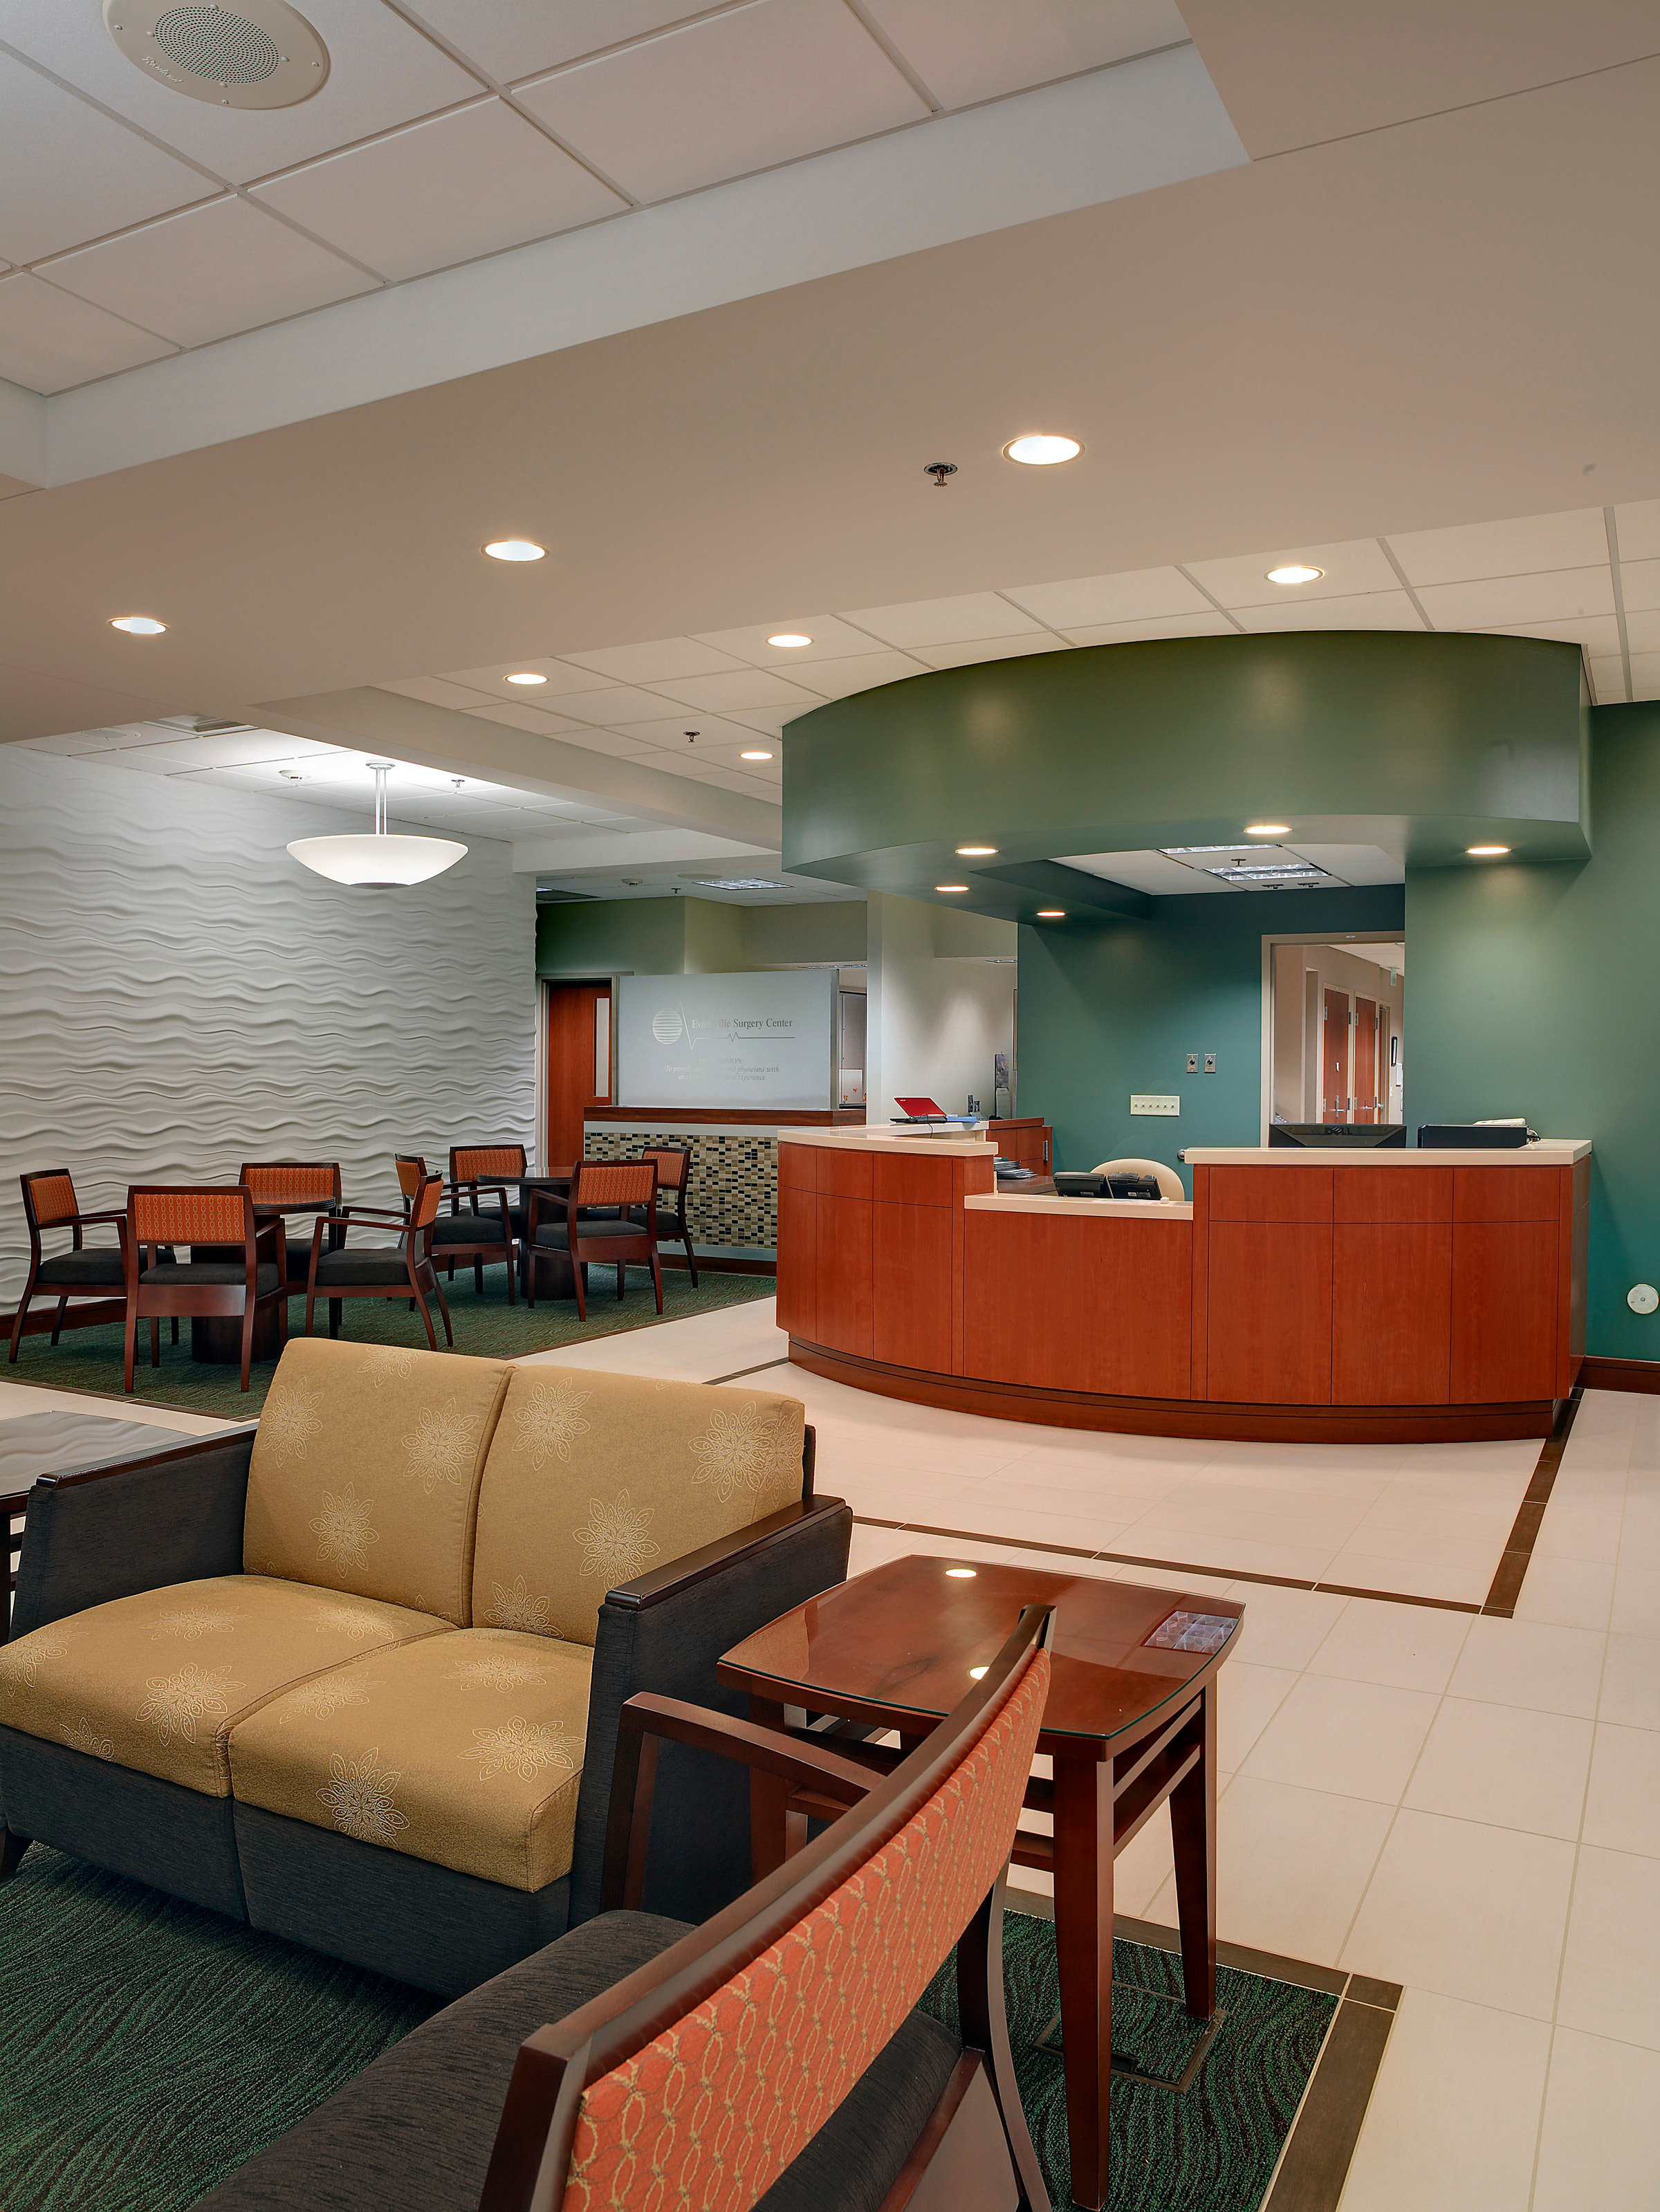 Evansville Surgery Center Photo